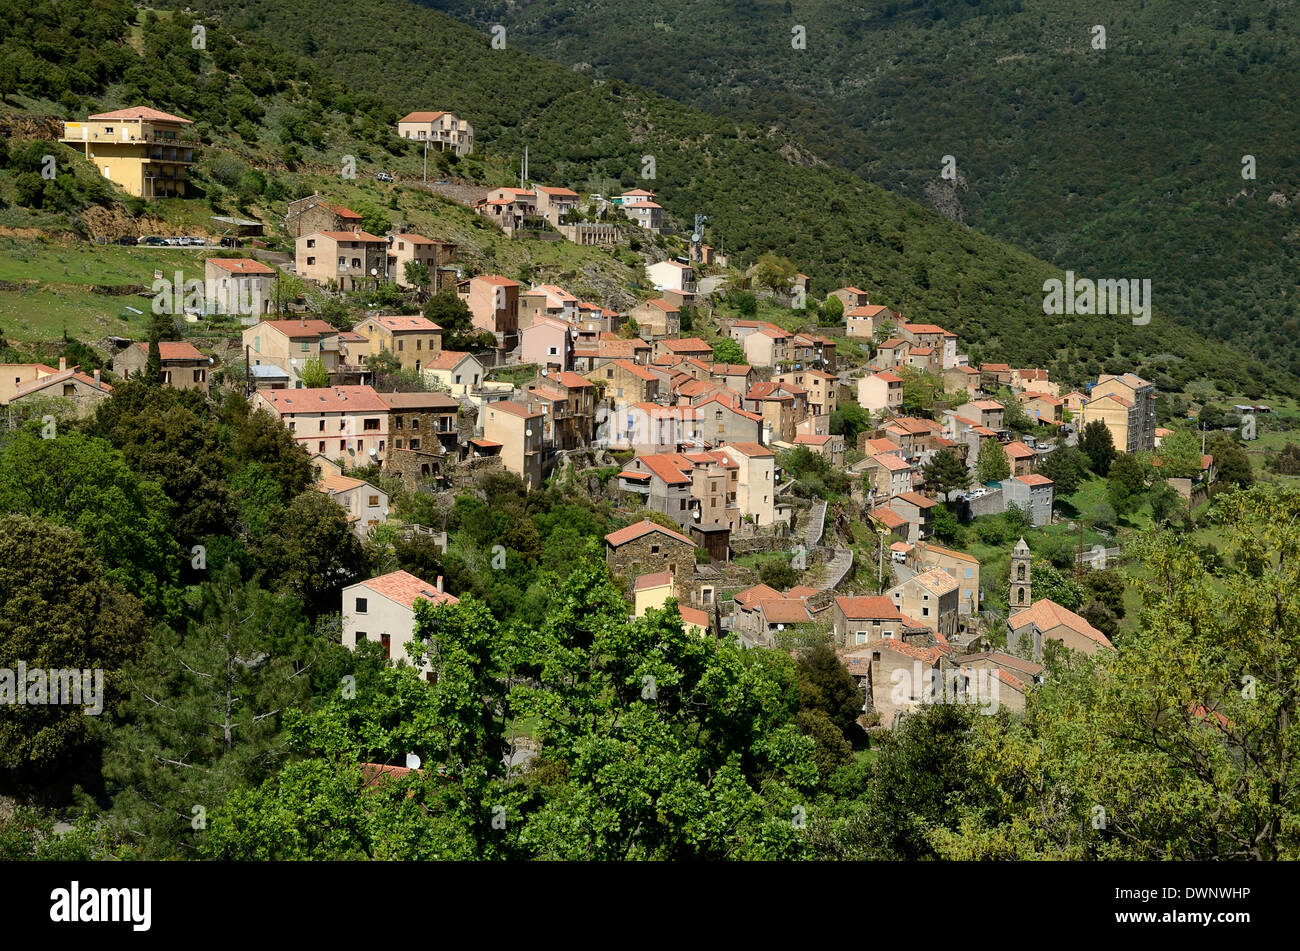 Mountain Village von Asco asco Tal, Korsika, Frankreich Stockfoto